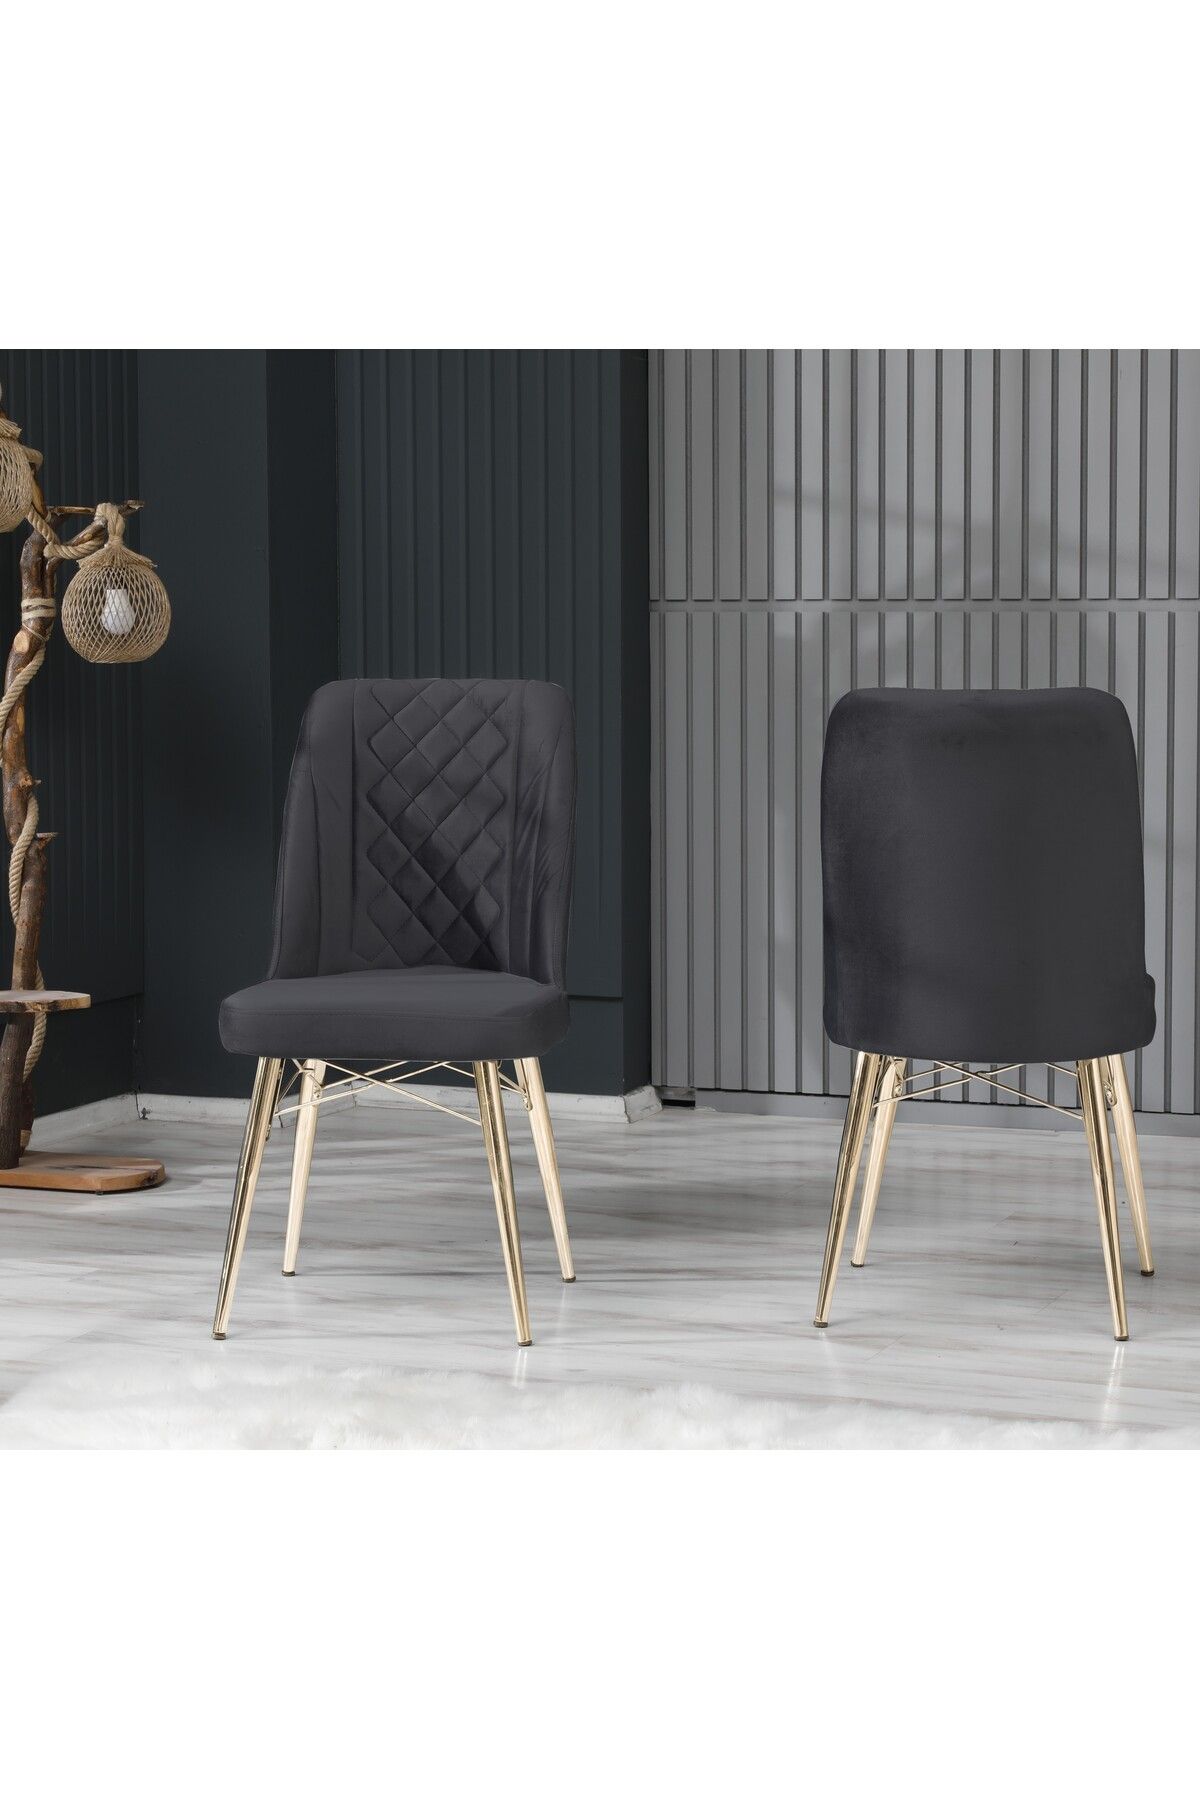 İNCİMO Cafe Salon Mutfak Sandalyeleri Seher Kptn Antrasit Gold Ayaklı